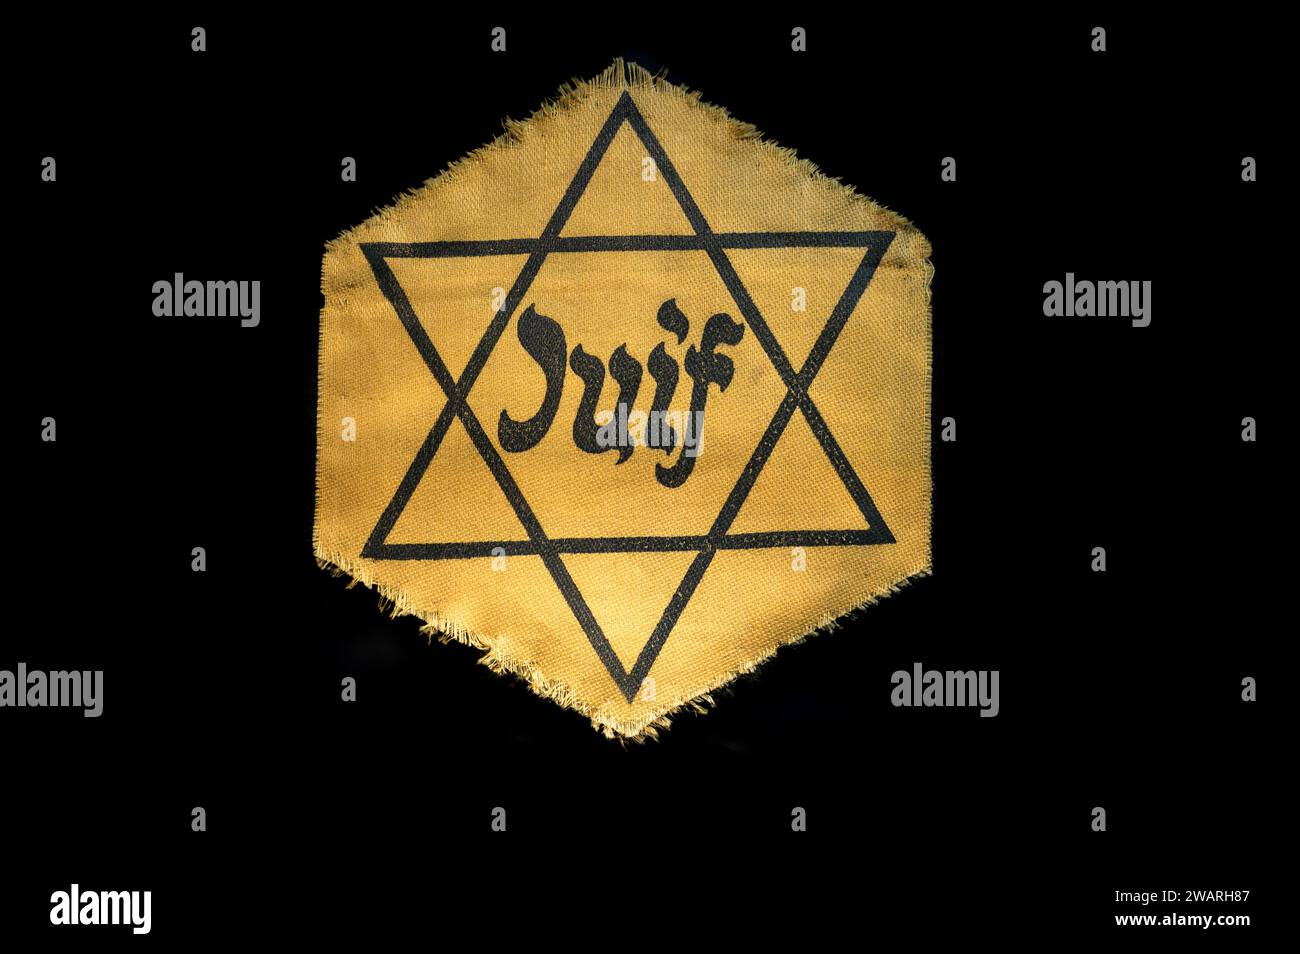 Détail du badge juif sur un tissu sur fond noir Banque D'Images